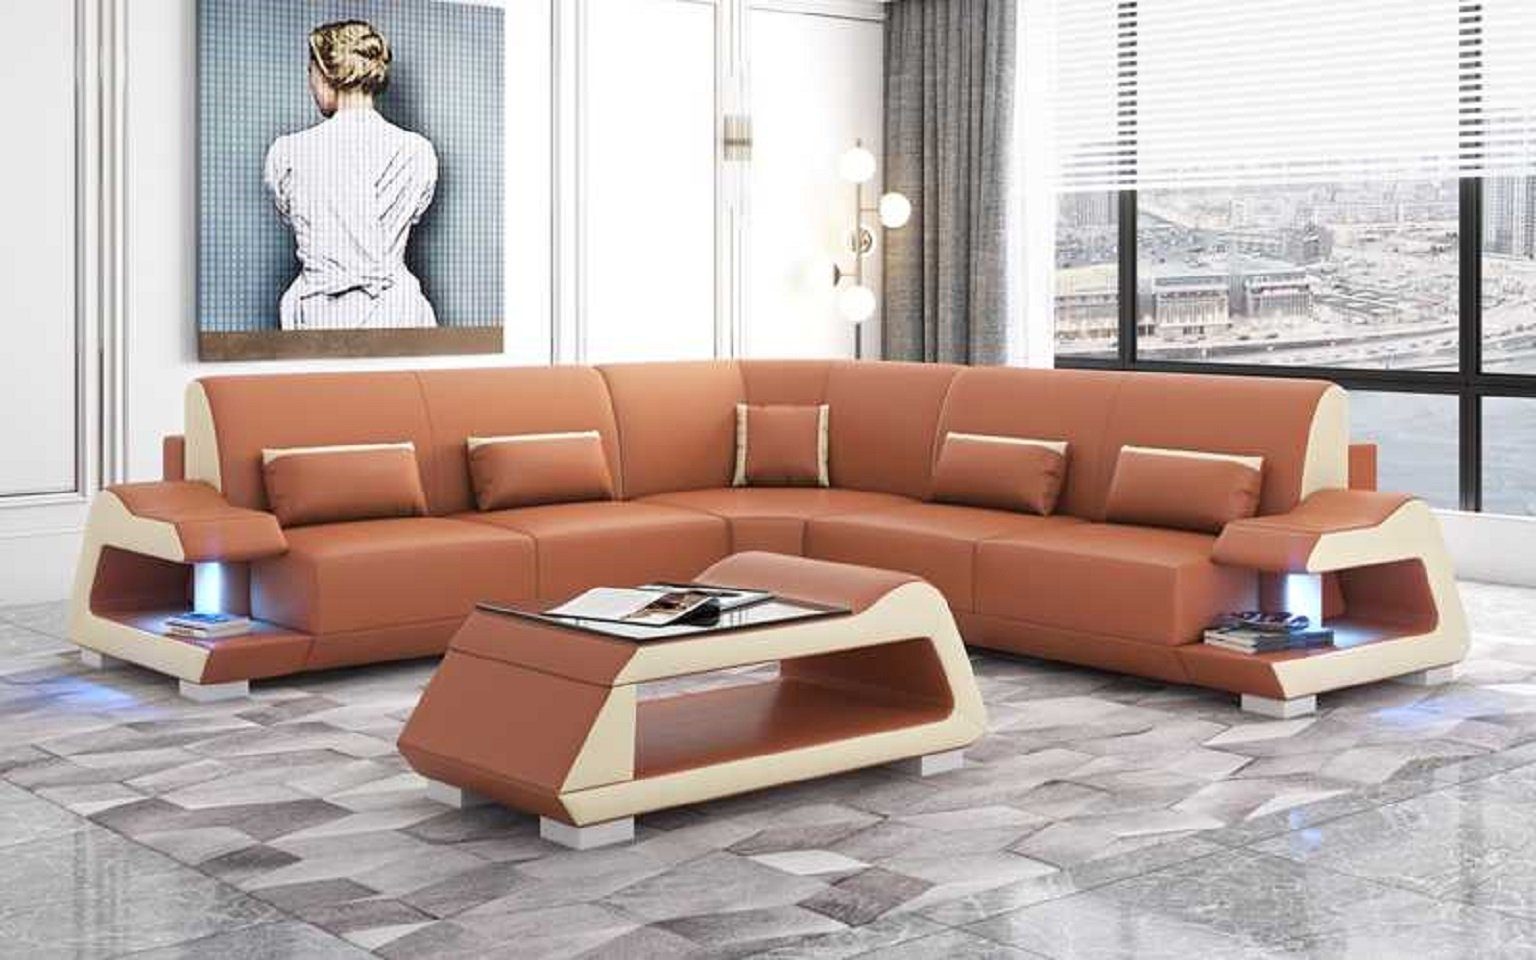 JVmoebel Ecksofa Luxus L Made Teile, Sofa Wohnzimmer Sofas, Europe Eckgarnitur Form Ecksofa Braun 3 in